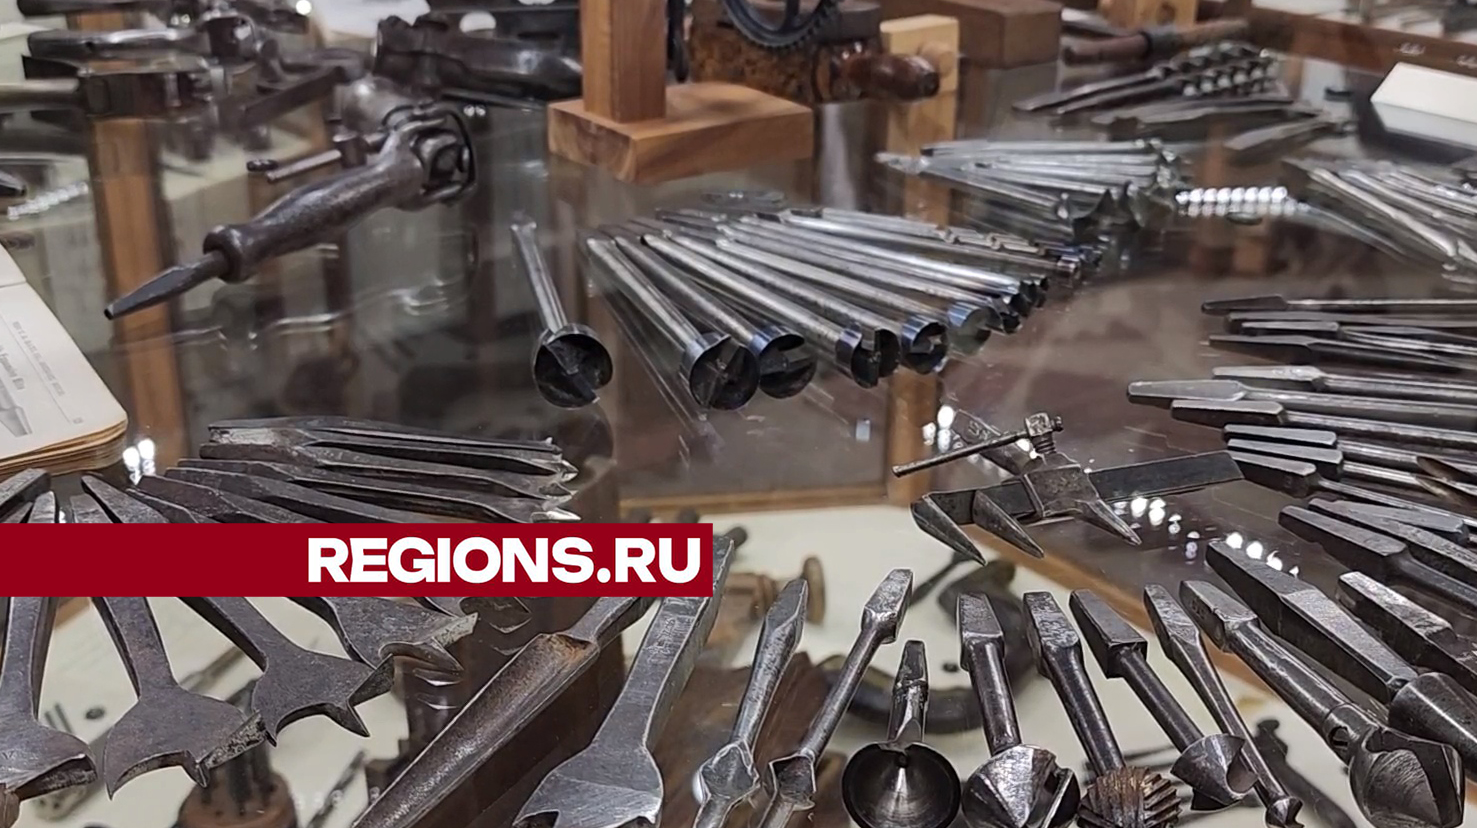 В уникальном музее столярных инструментов в Пушкино заботливо хранят историю искусства обработки дерева